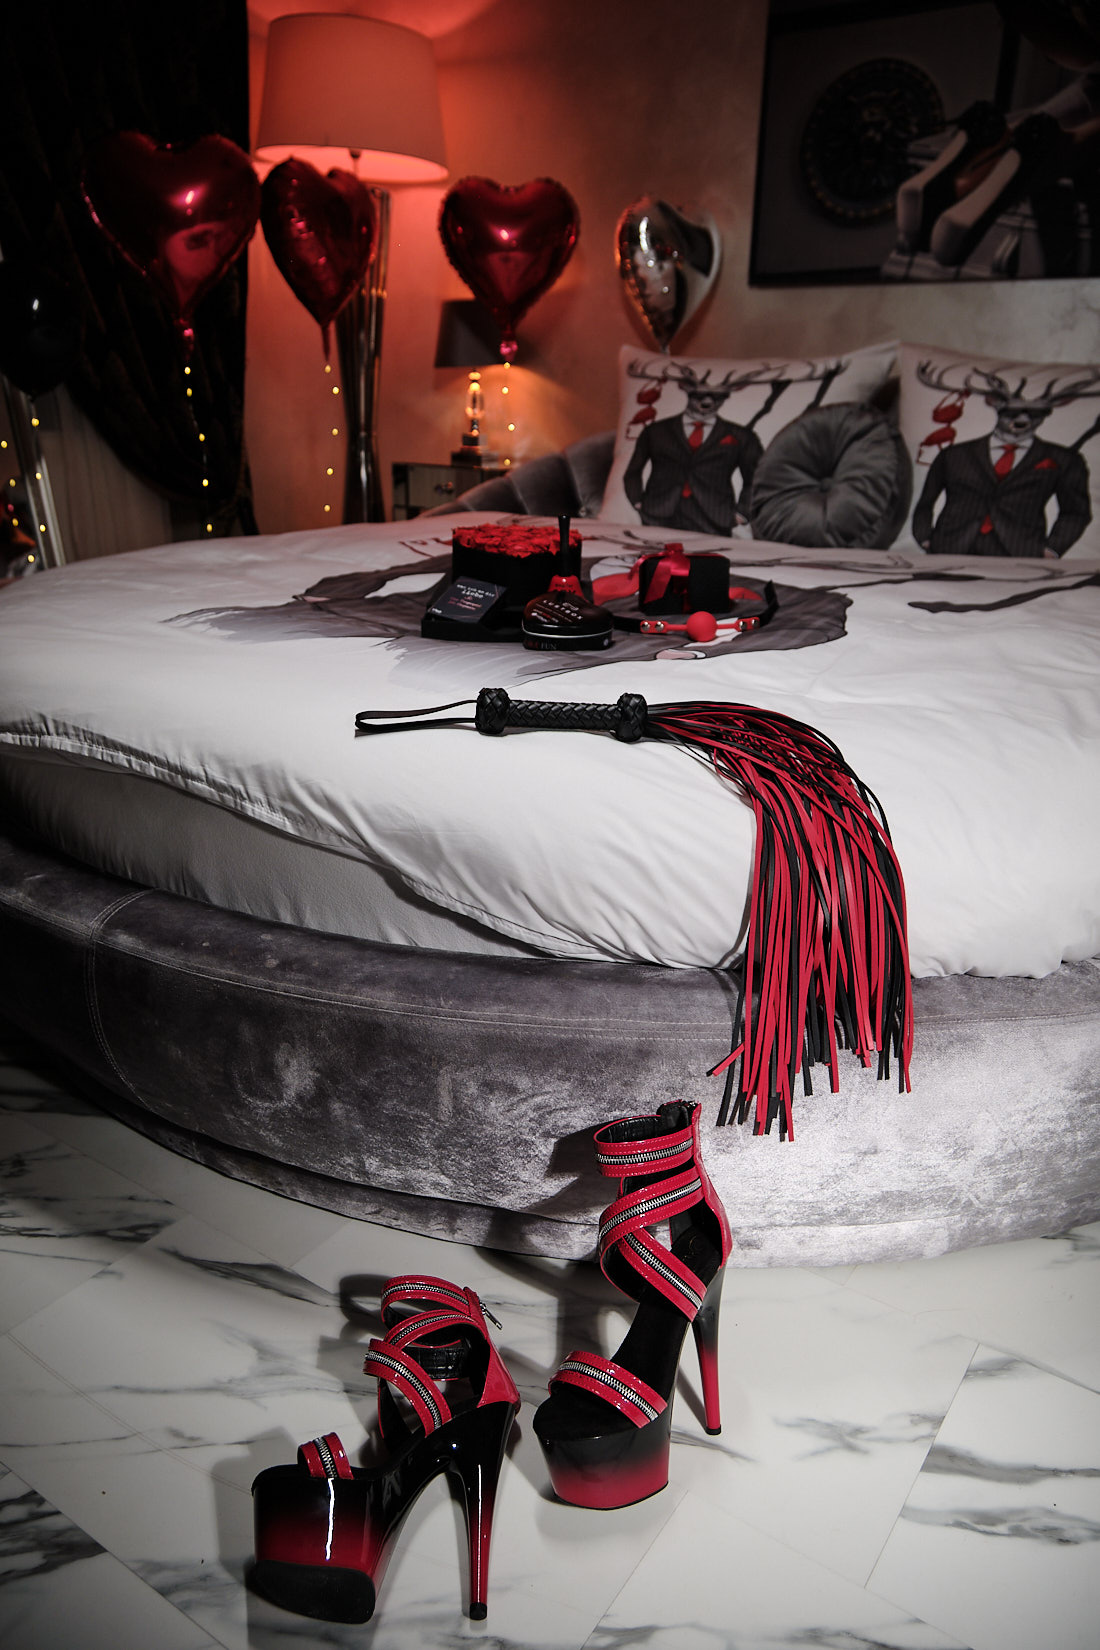 Die Romantische Übernachtung Das Diskrete Erotik Hotel In Saarlouis Saarland Sweet Poison 